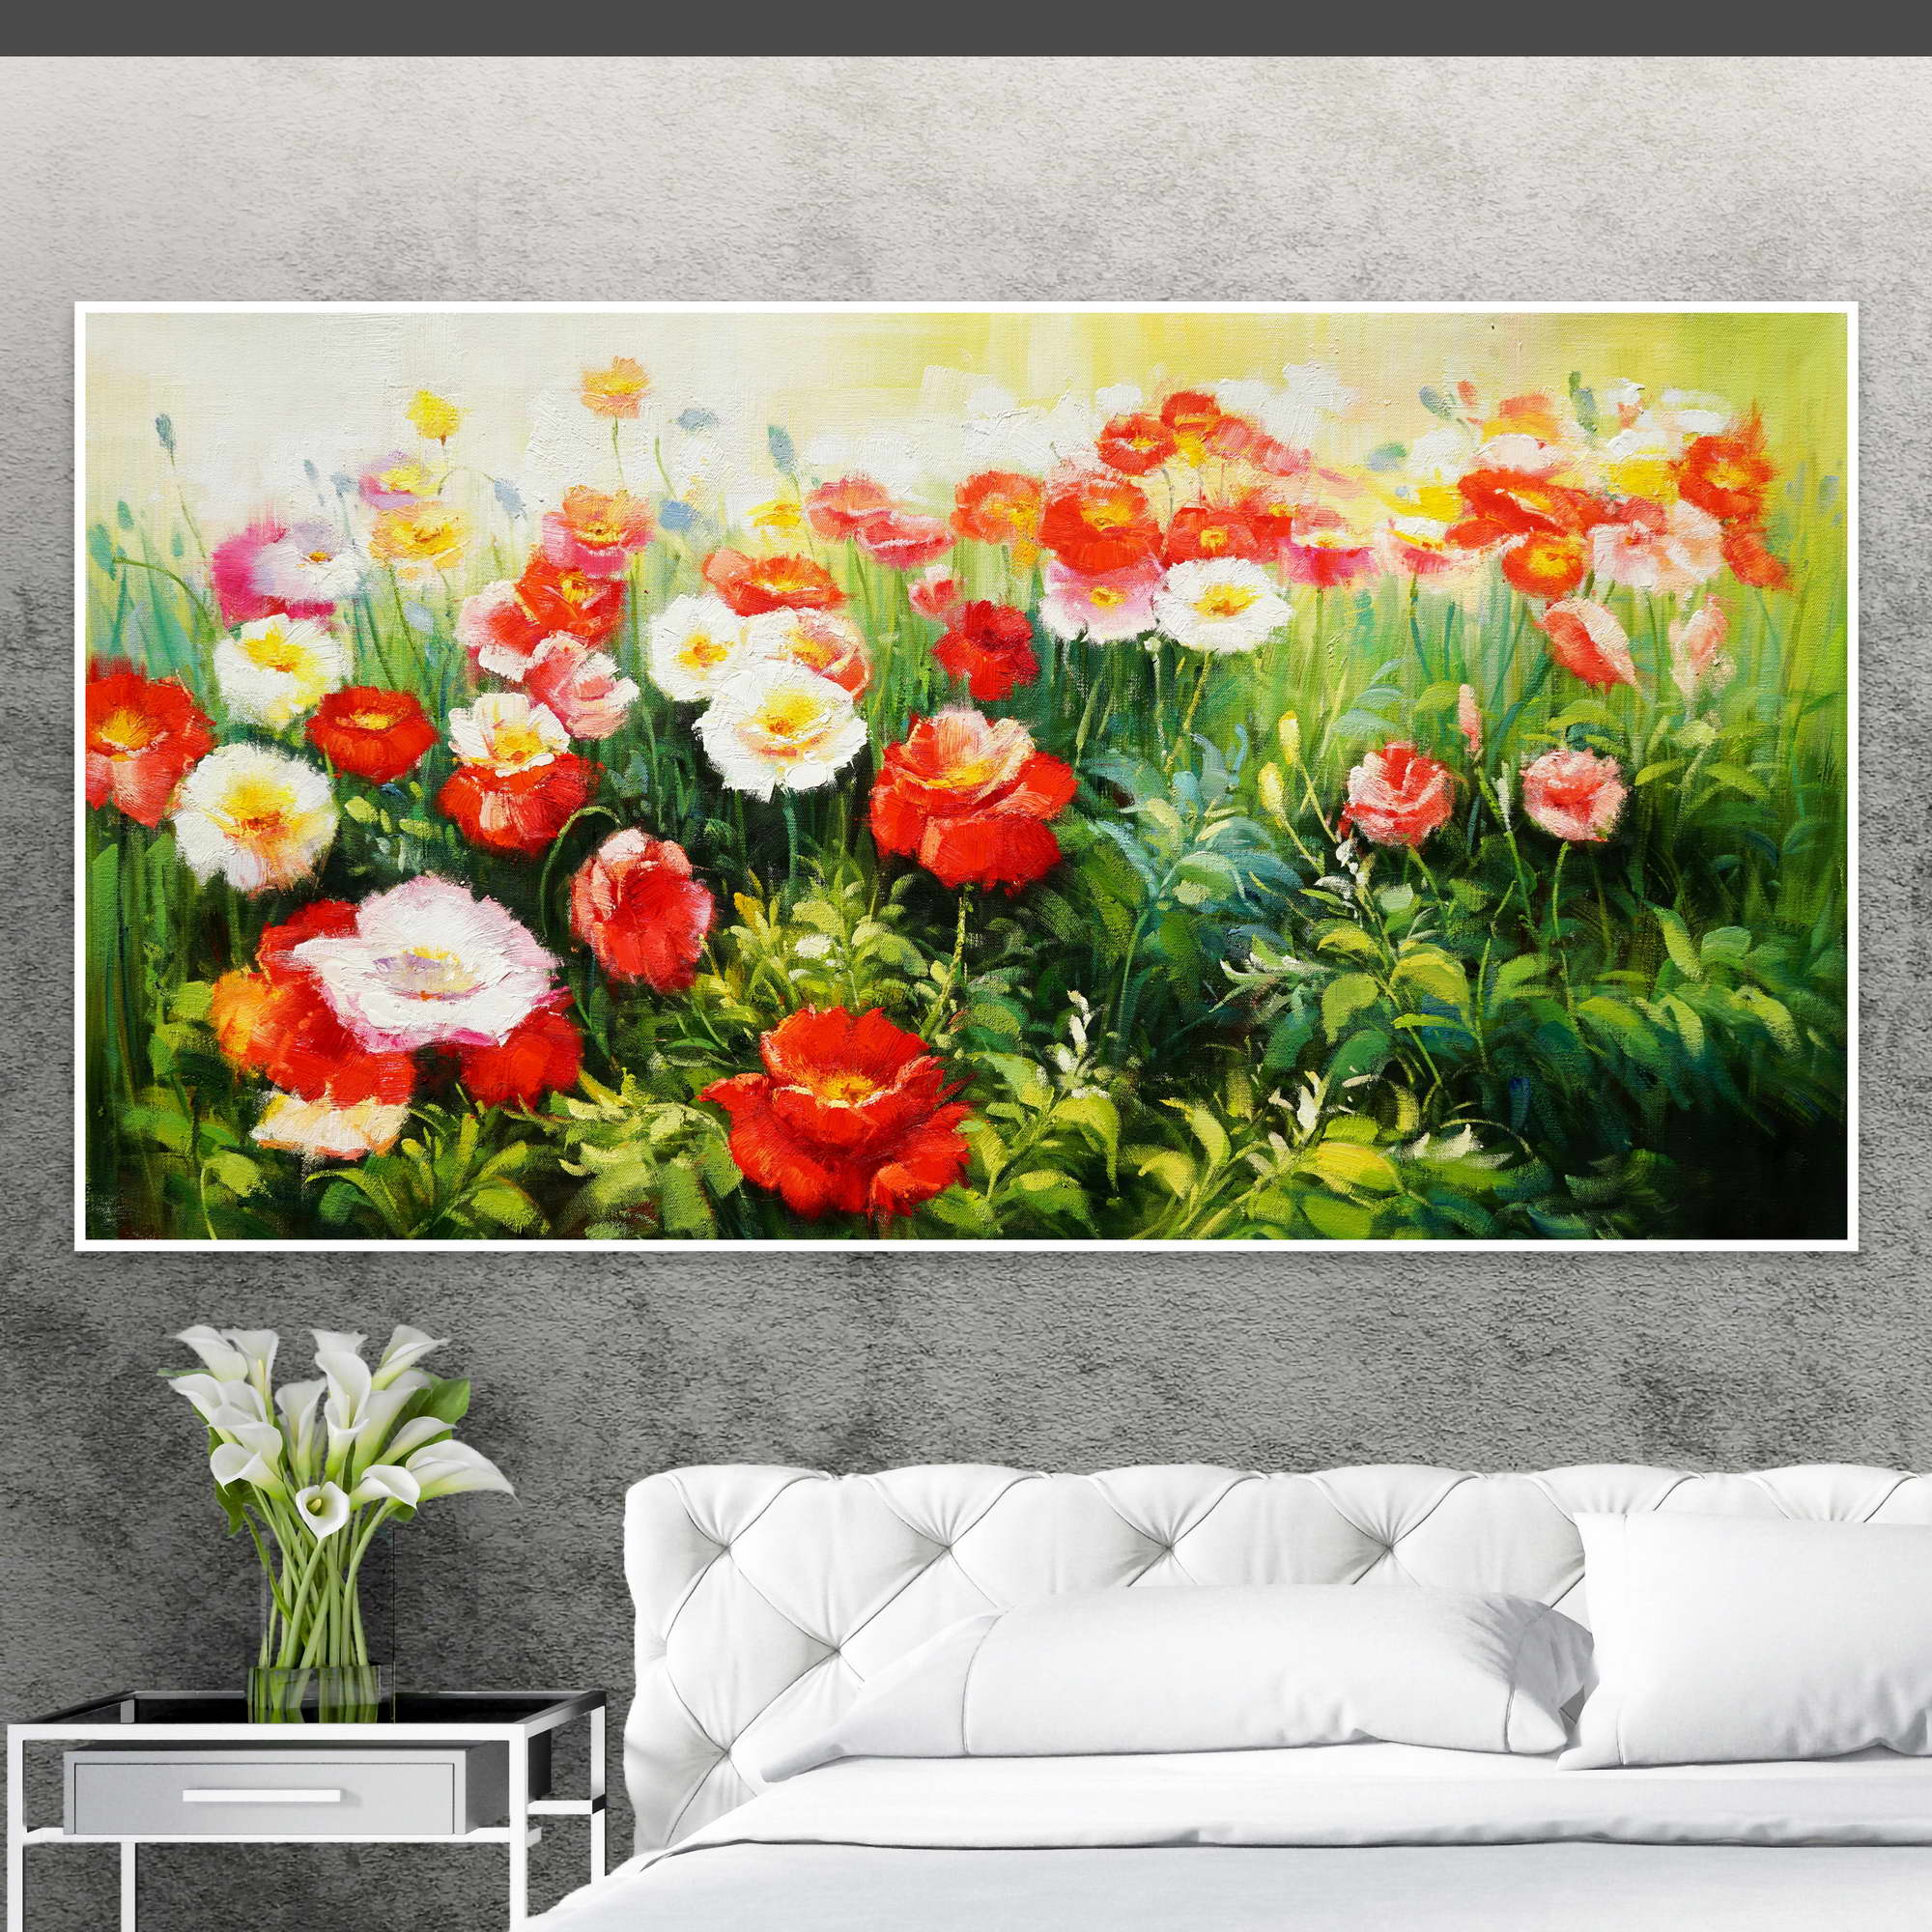 Dipinto ad olio di un campo fiorito con fiori rossi, rosa e bianchi.